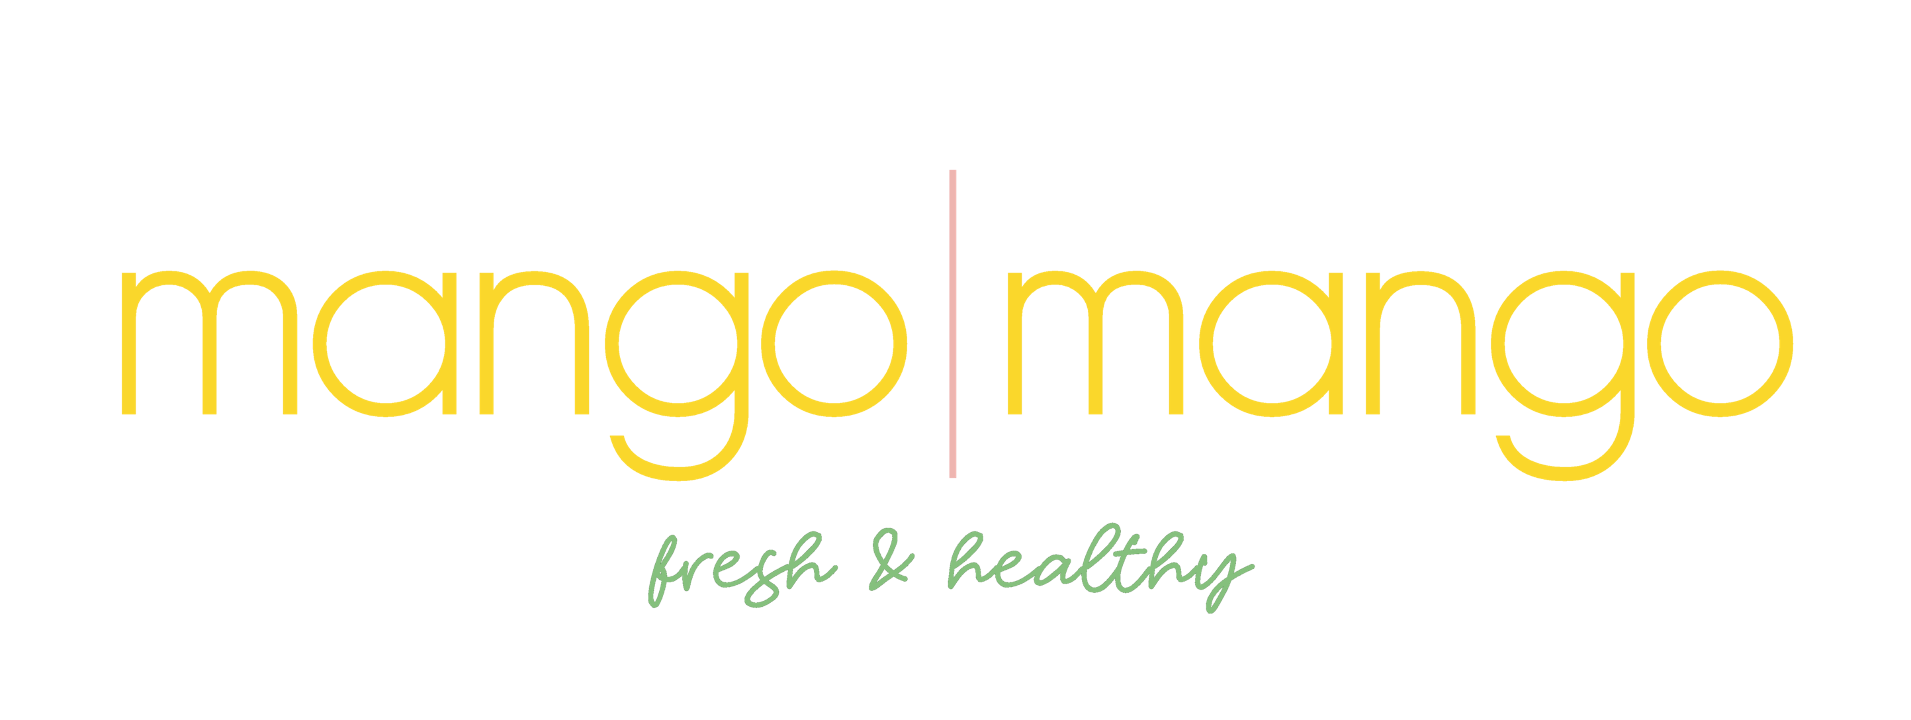 Mango Mango logo